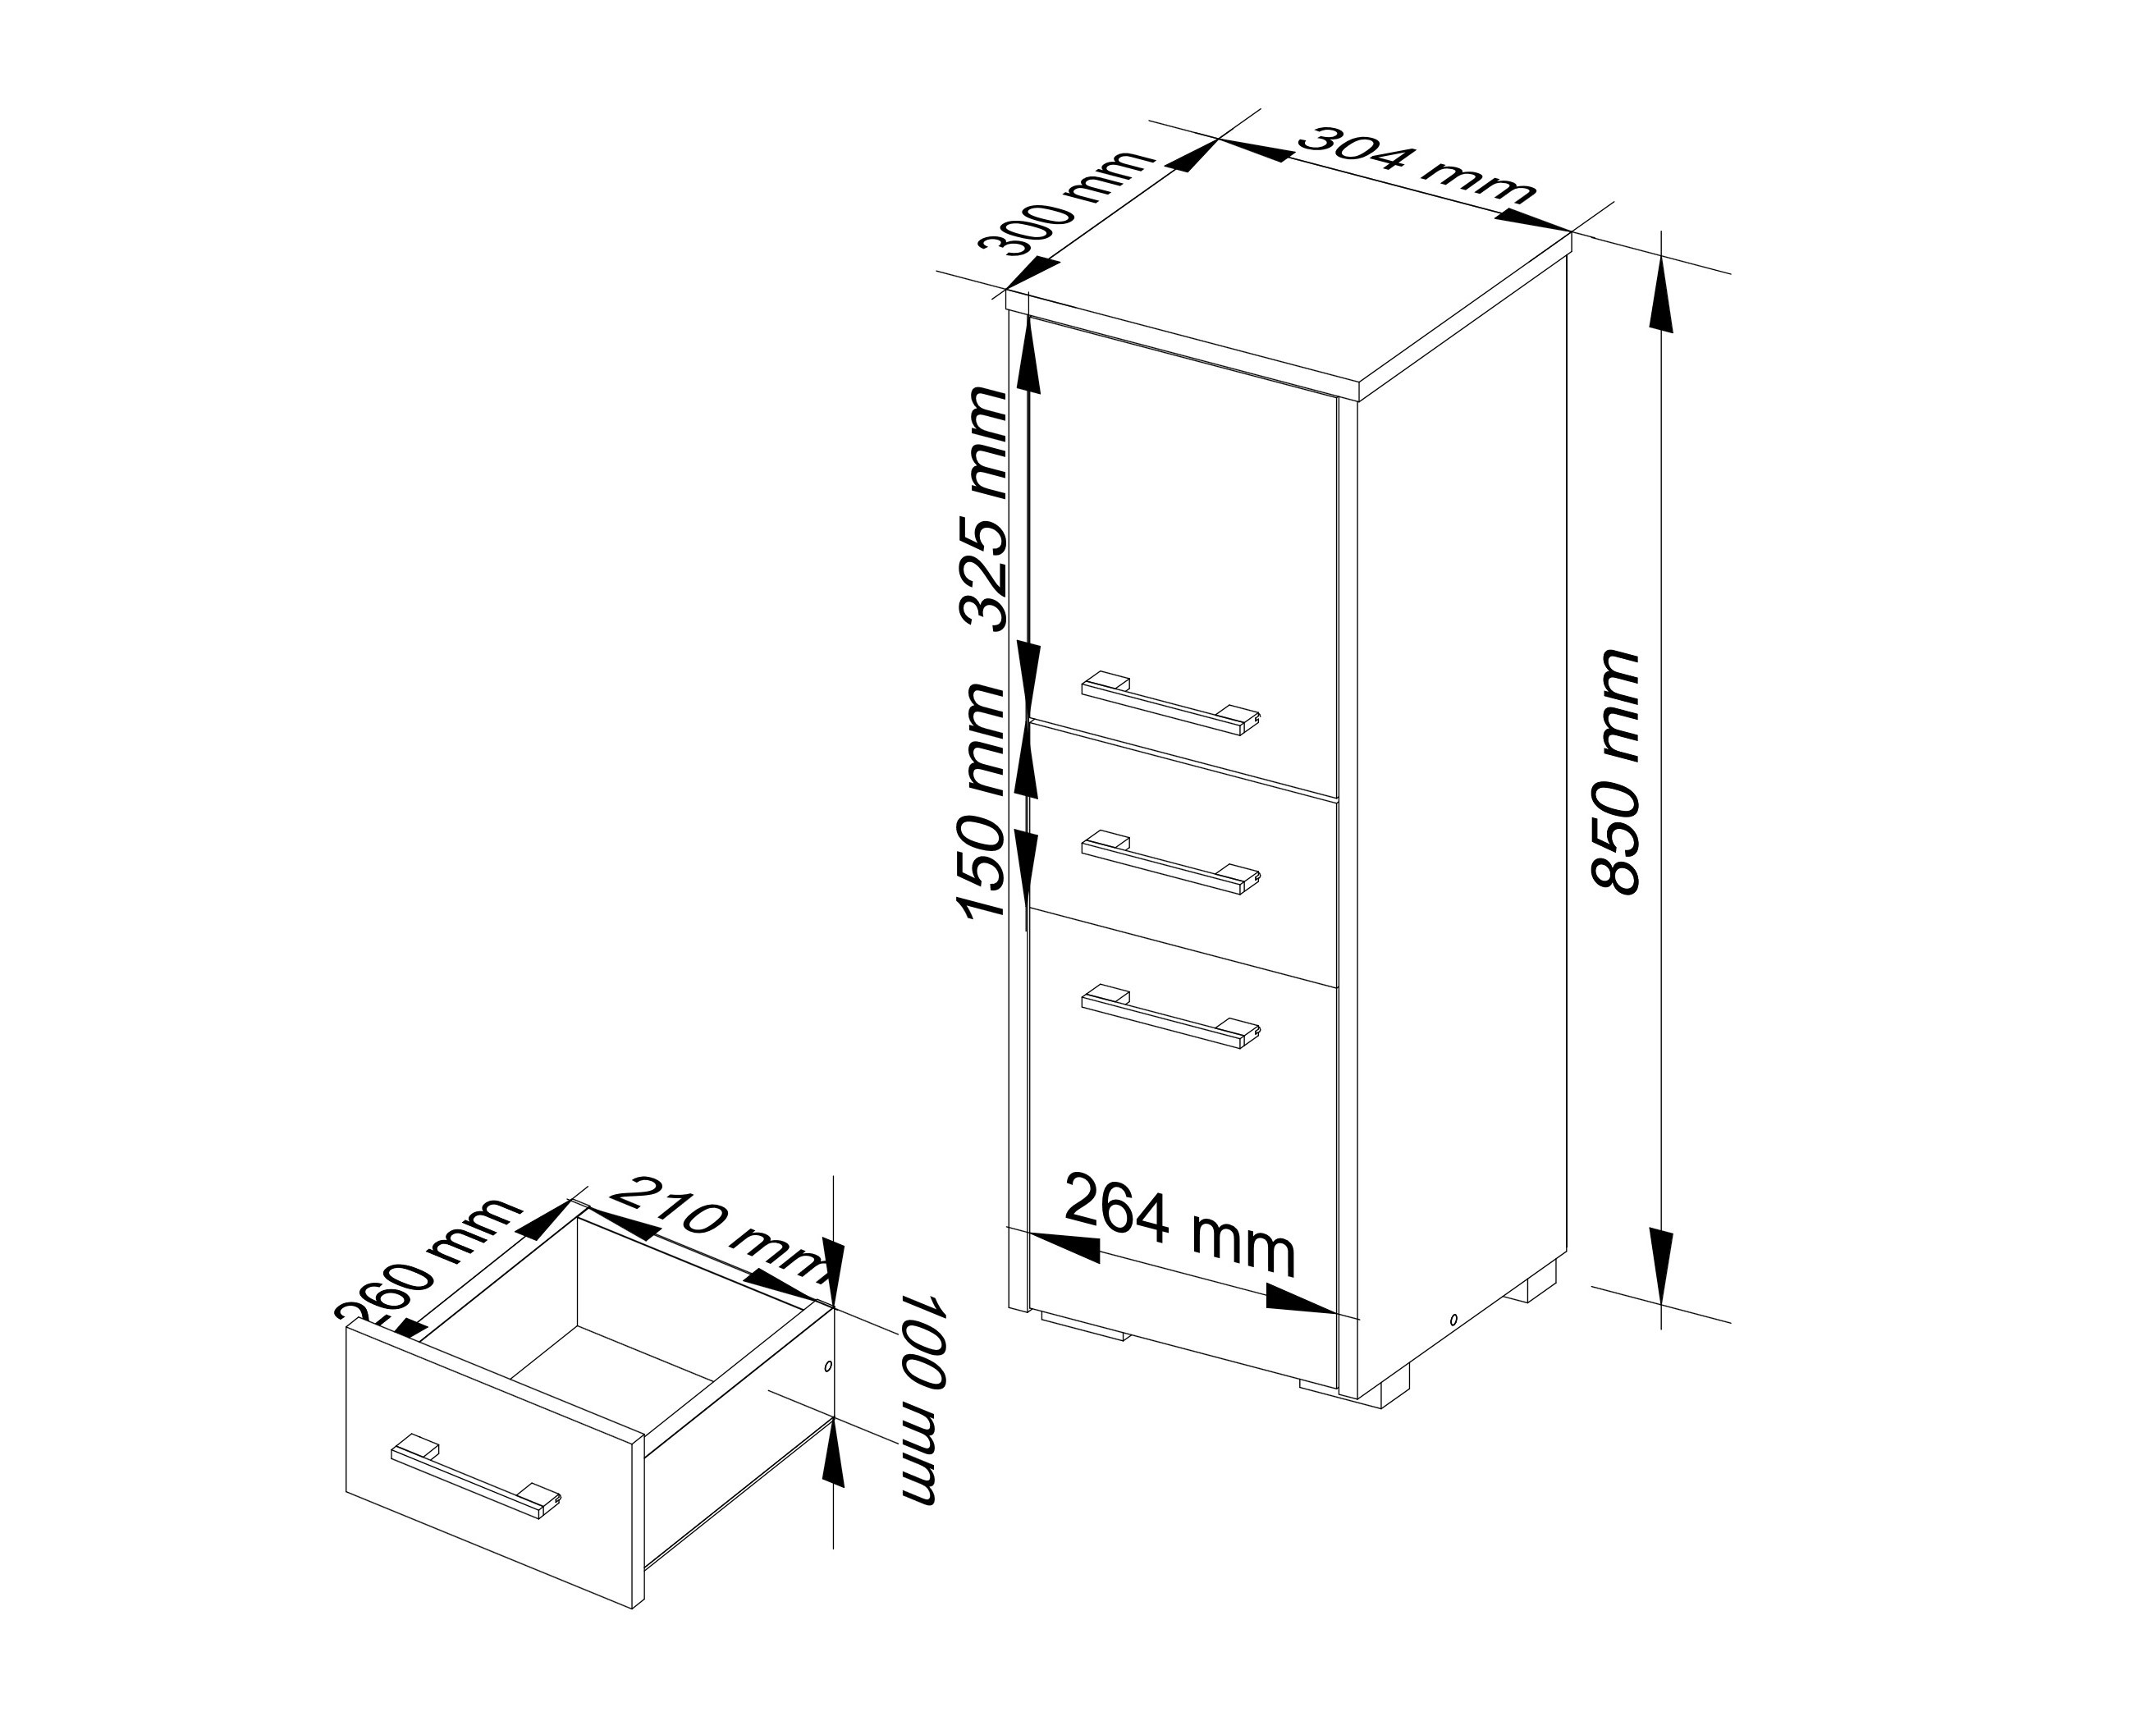 Meble AKORD - Szafka łazienkowa FIN Biała 30 cm 2 drzwi 1 szuflada kolor Dąb Sonoma mat 3 półki 30x30x85 cm - Wymiary toaletki AKORD - 5907504389035